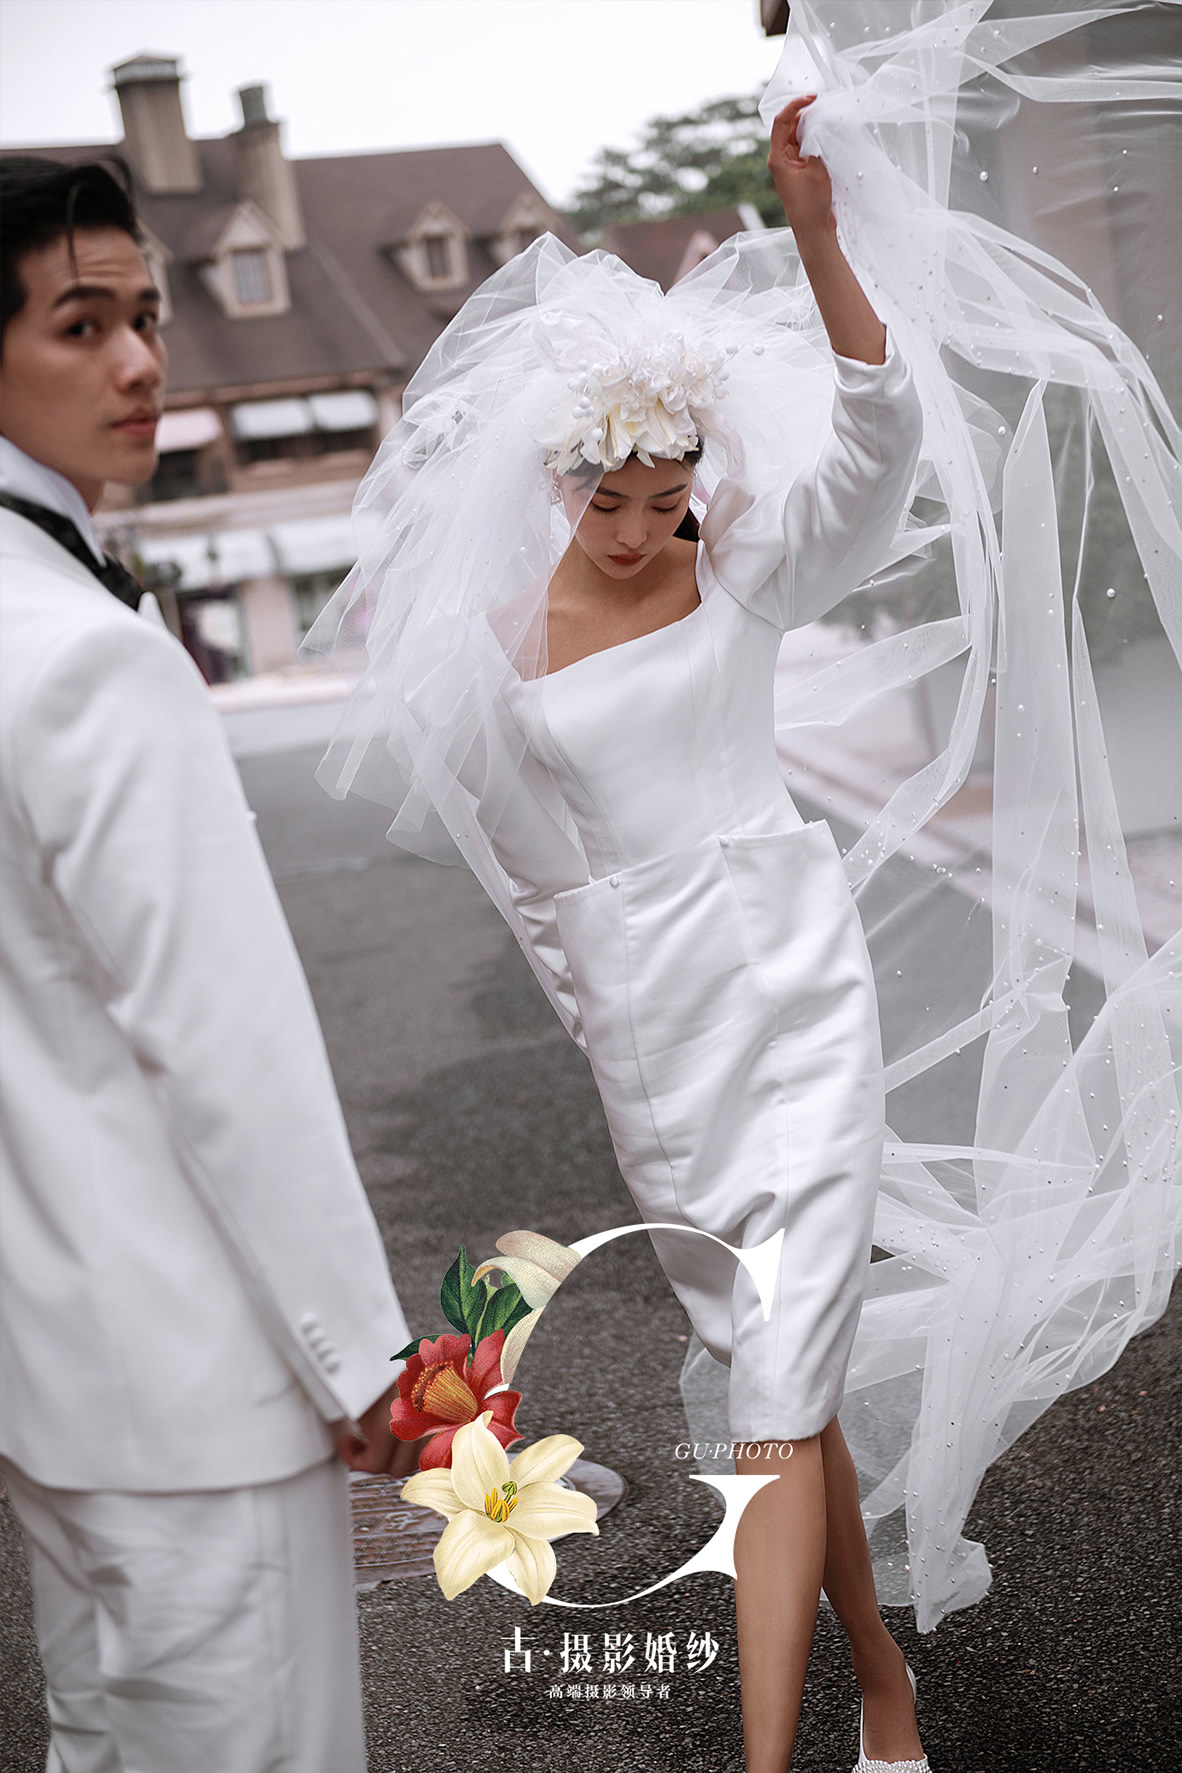 公主道《巴赫小调》 - 拍摄地 - 广州婚纱摄影-广州古摄影官网